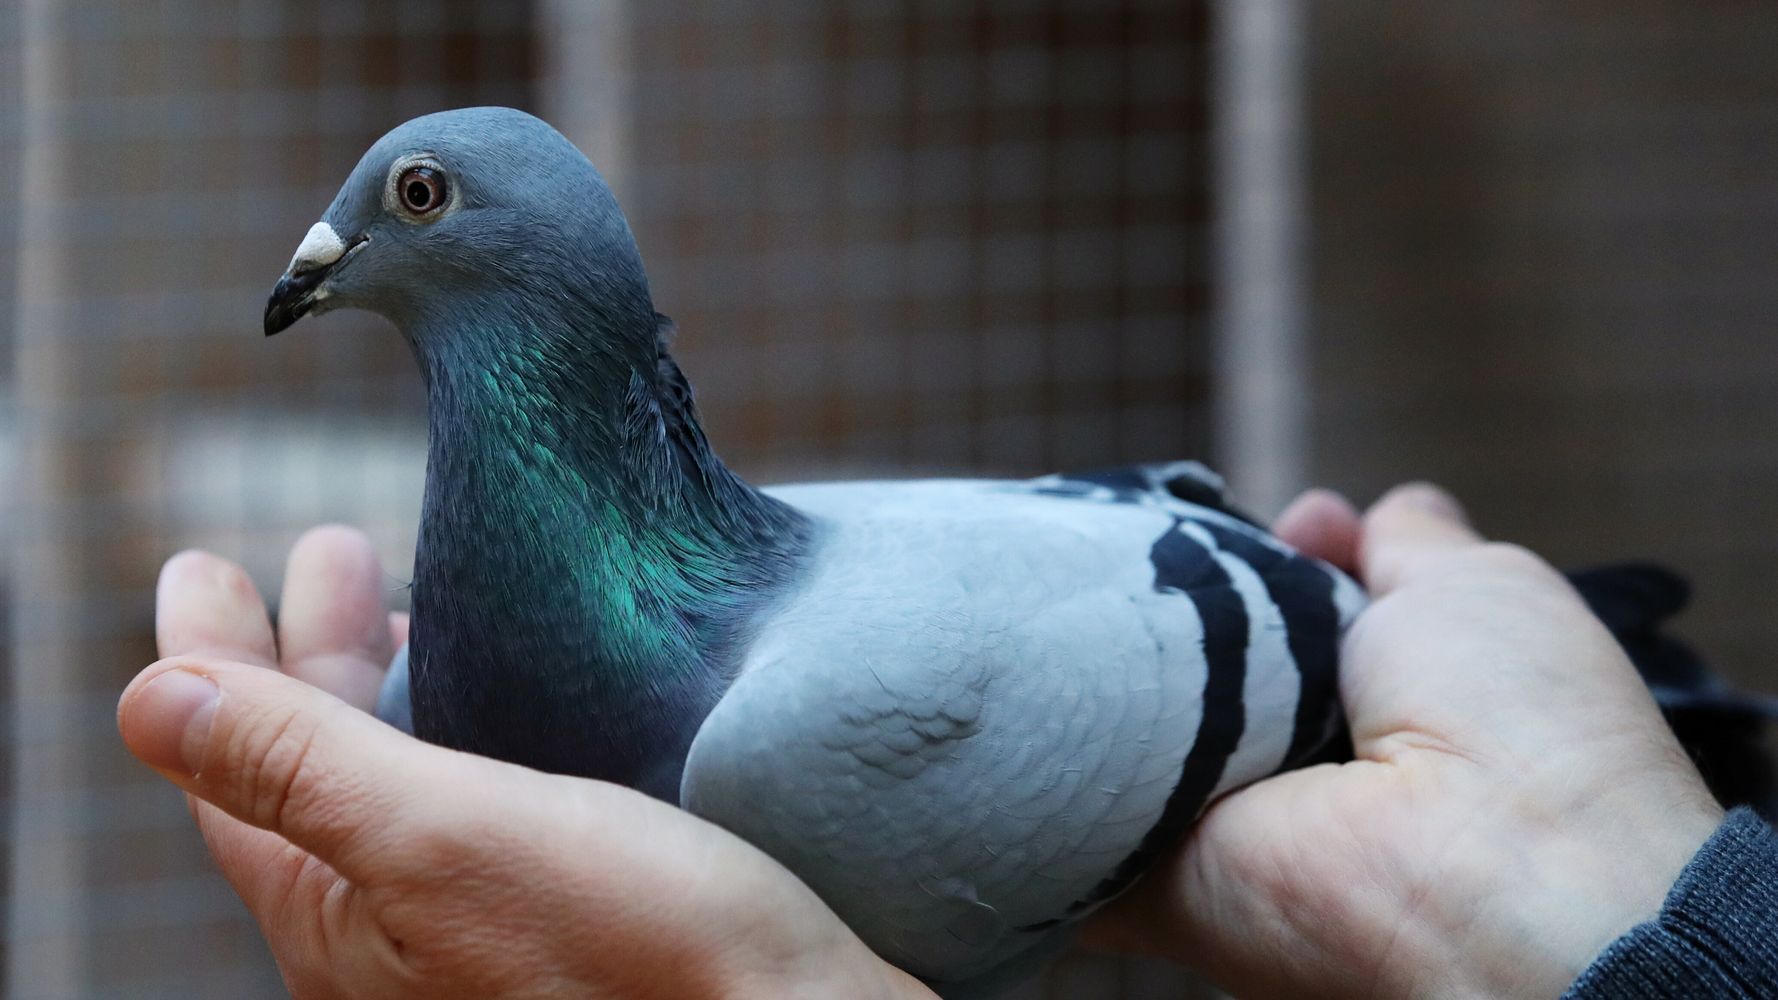 Belgian Racing Pigeon Flies Past Record In Auction